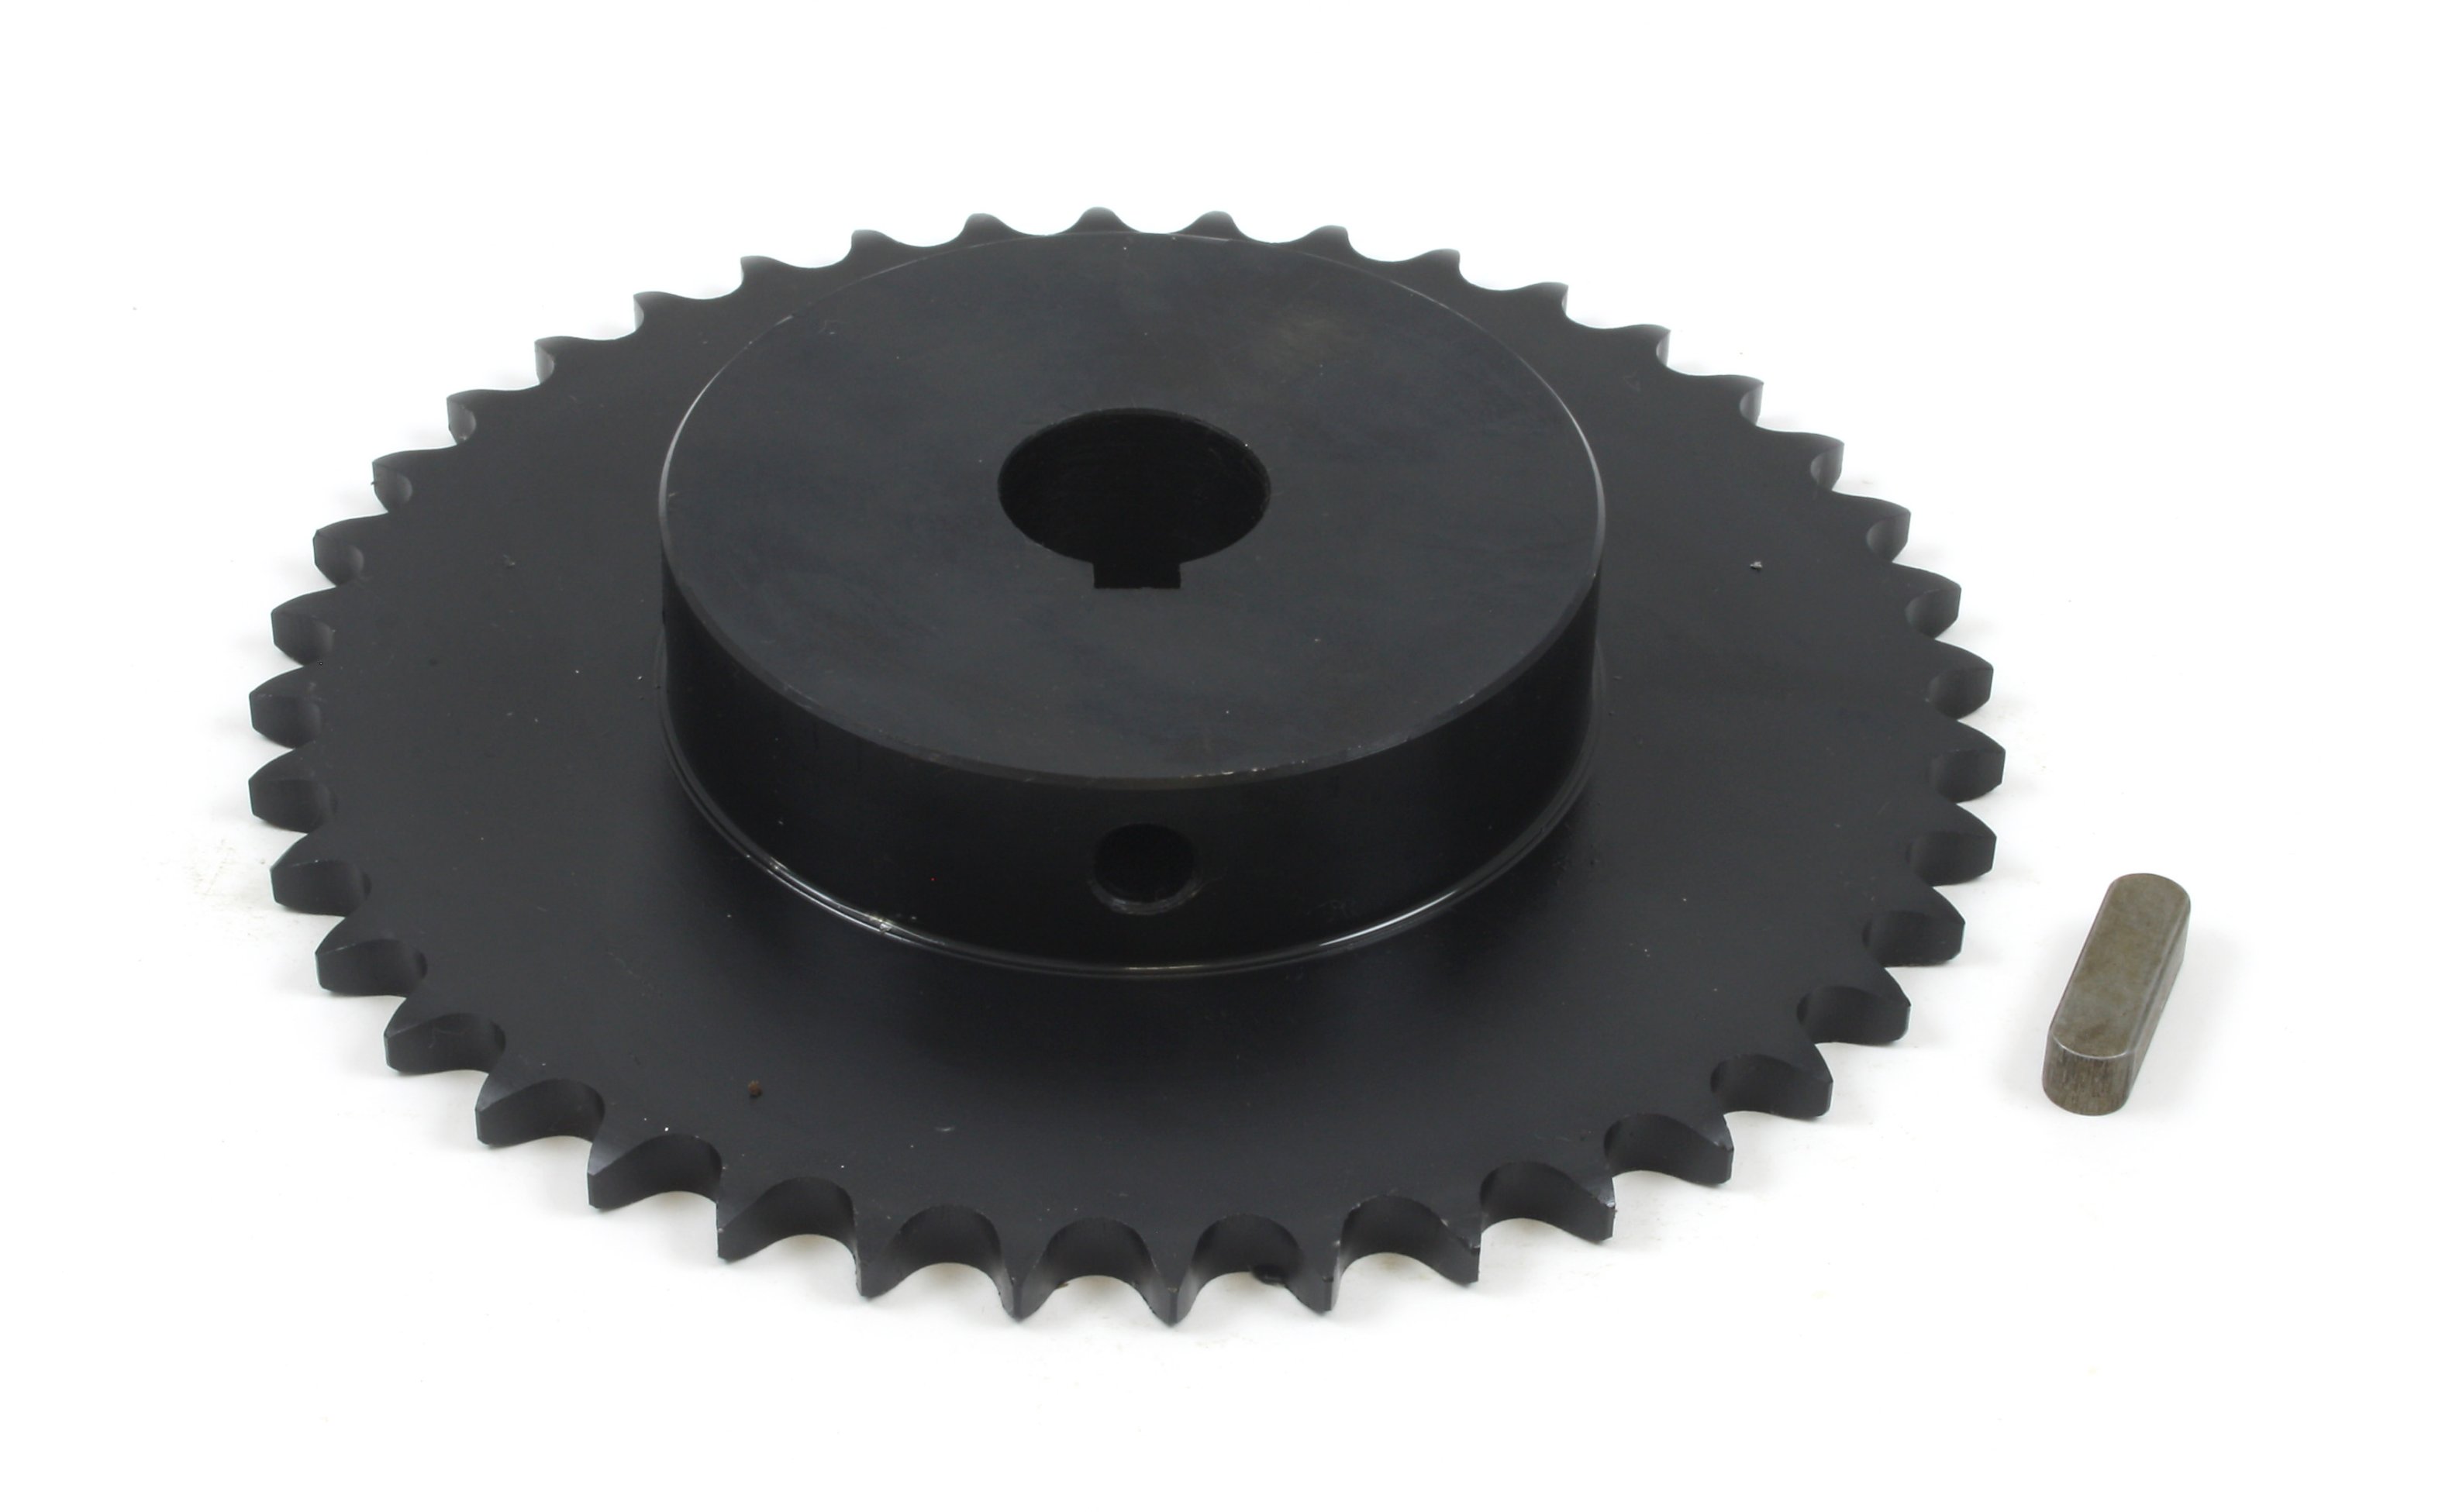 04C Chain Gear 45# Steel 9T-30T Teeth 5mm-20mm Bore Industrial Sprocket Wheel 